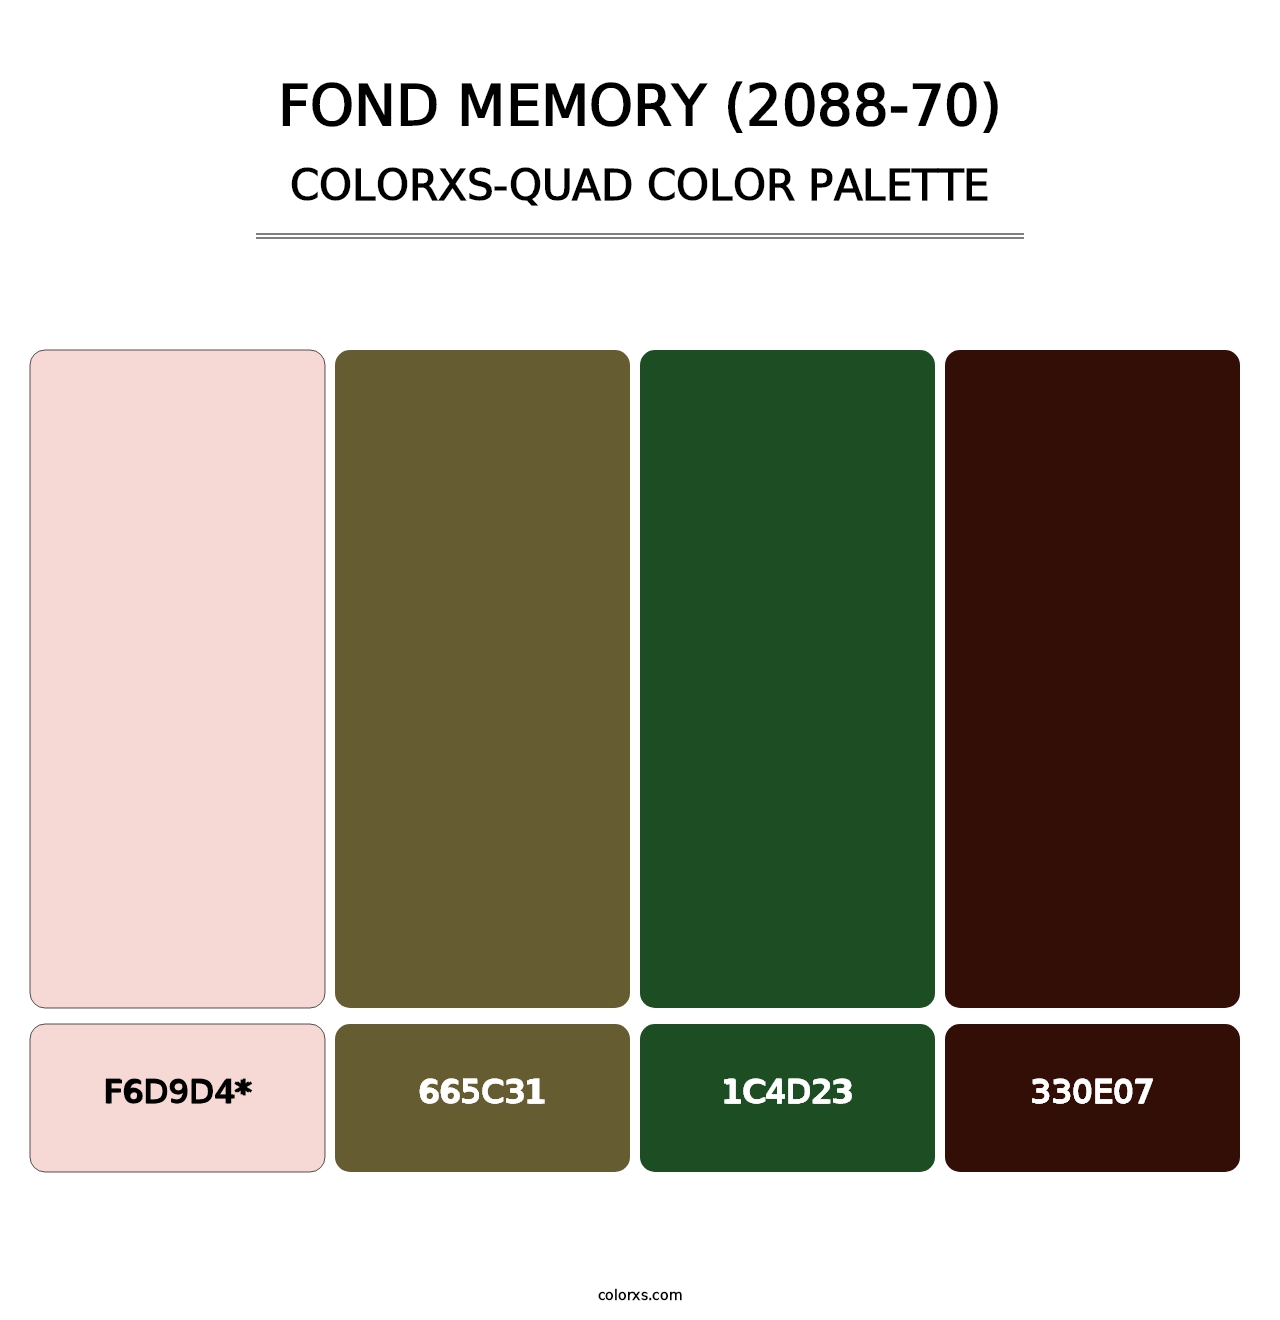 Fond Memory (2088-70) - Colorxs Quad Palette